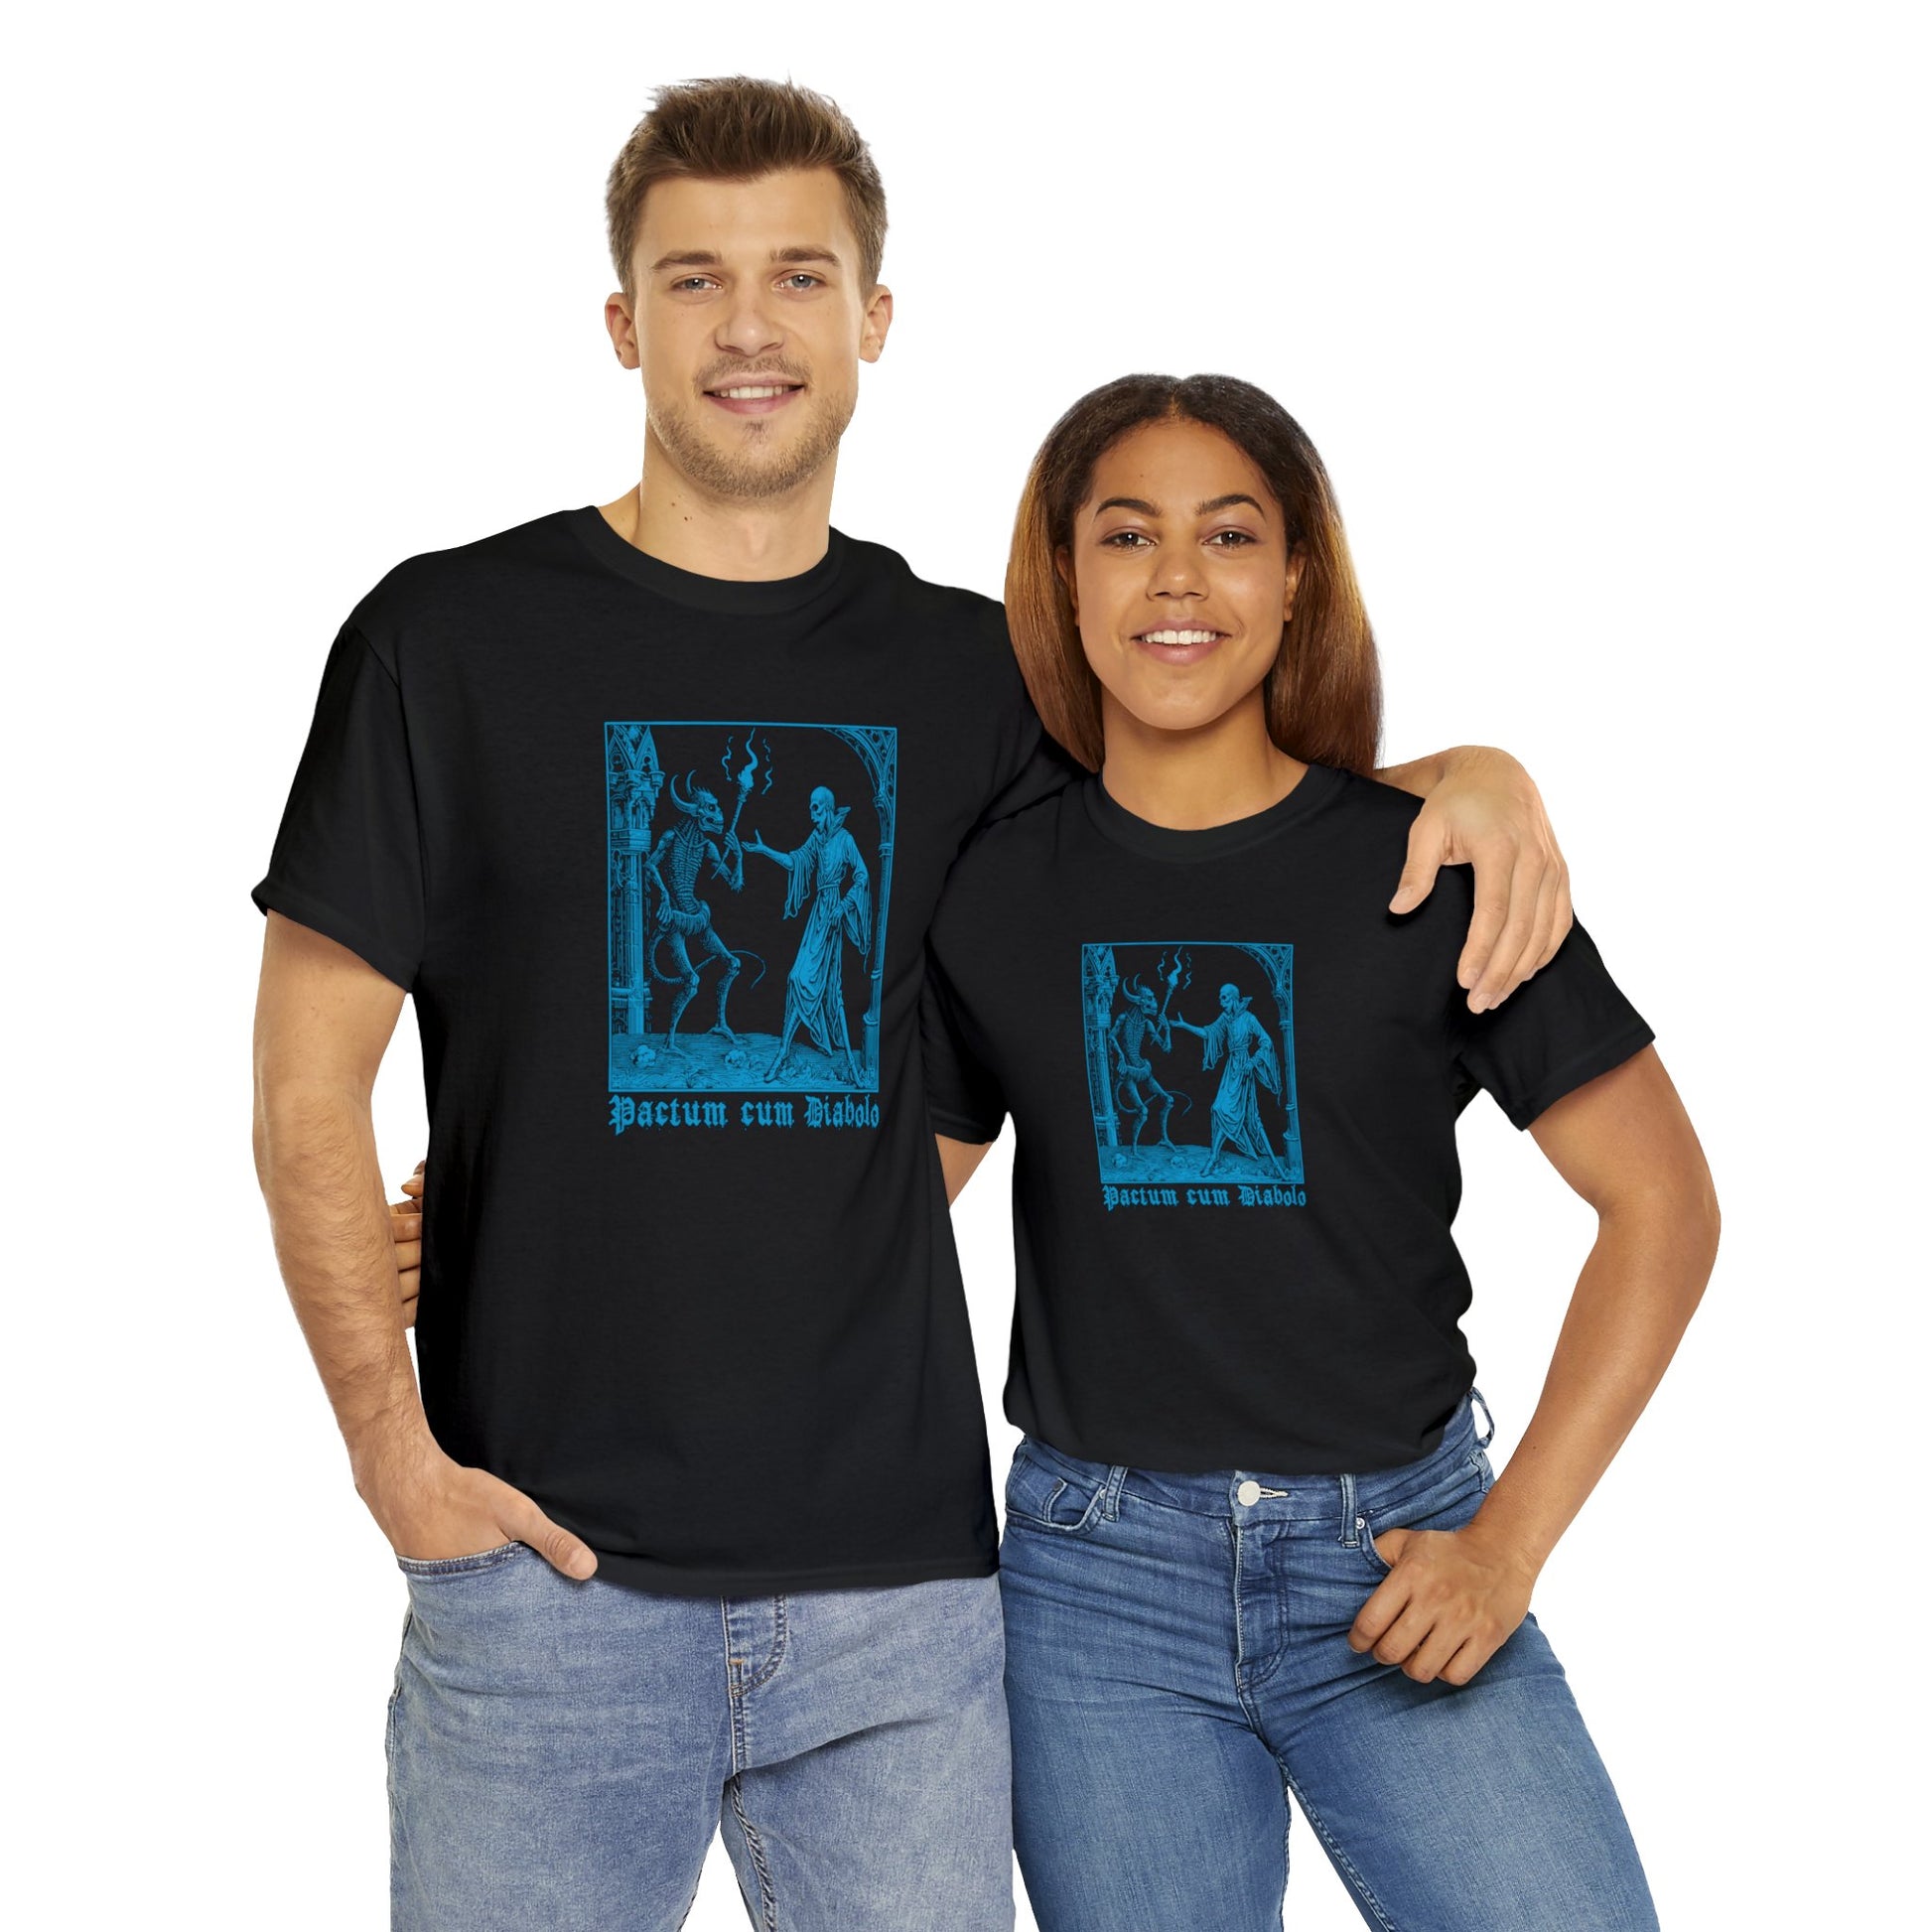 Unisex T-shirt Pactum cum Diabolo in Blue - Frogos Design